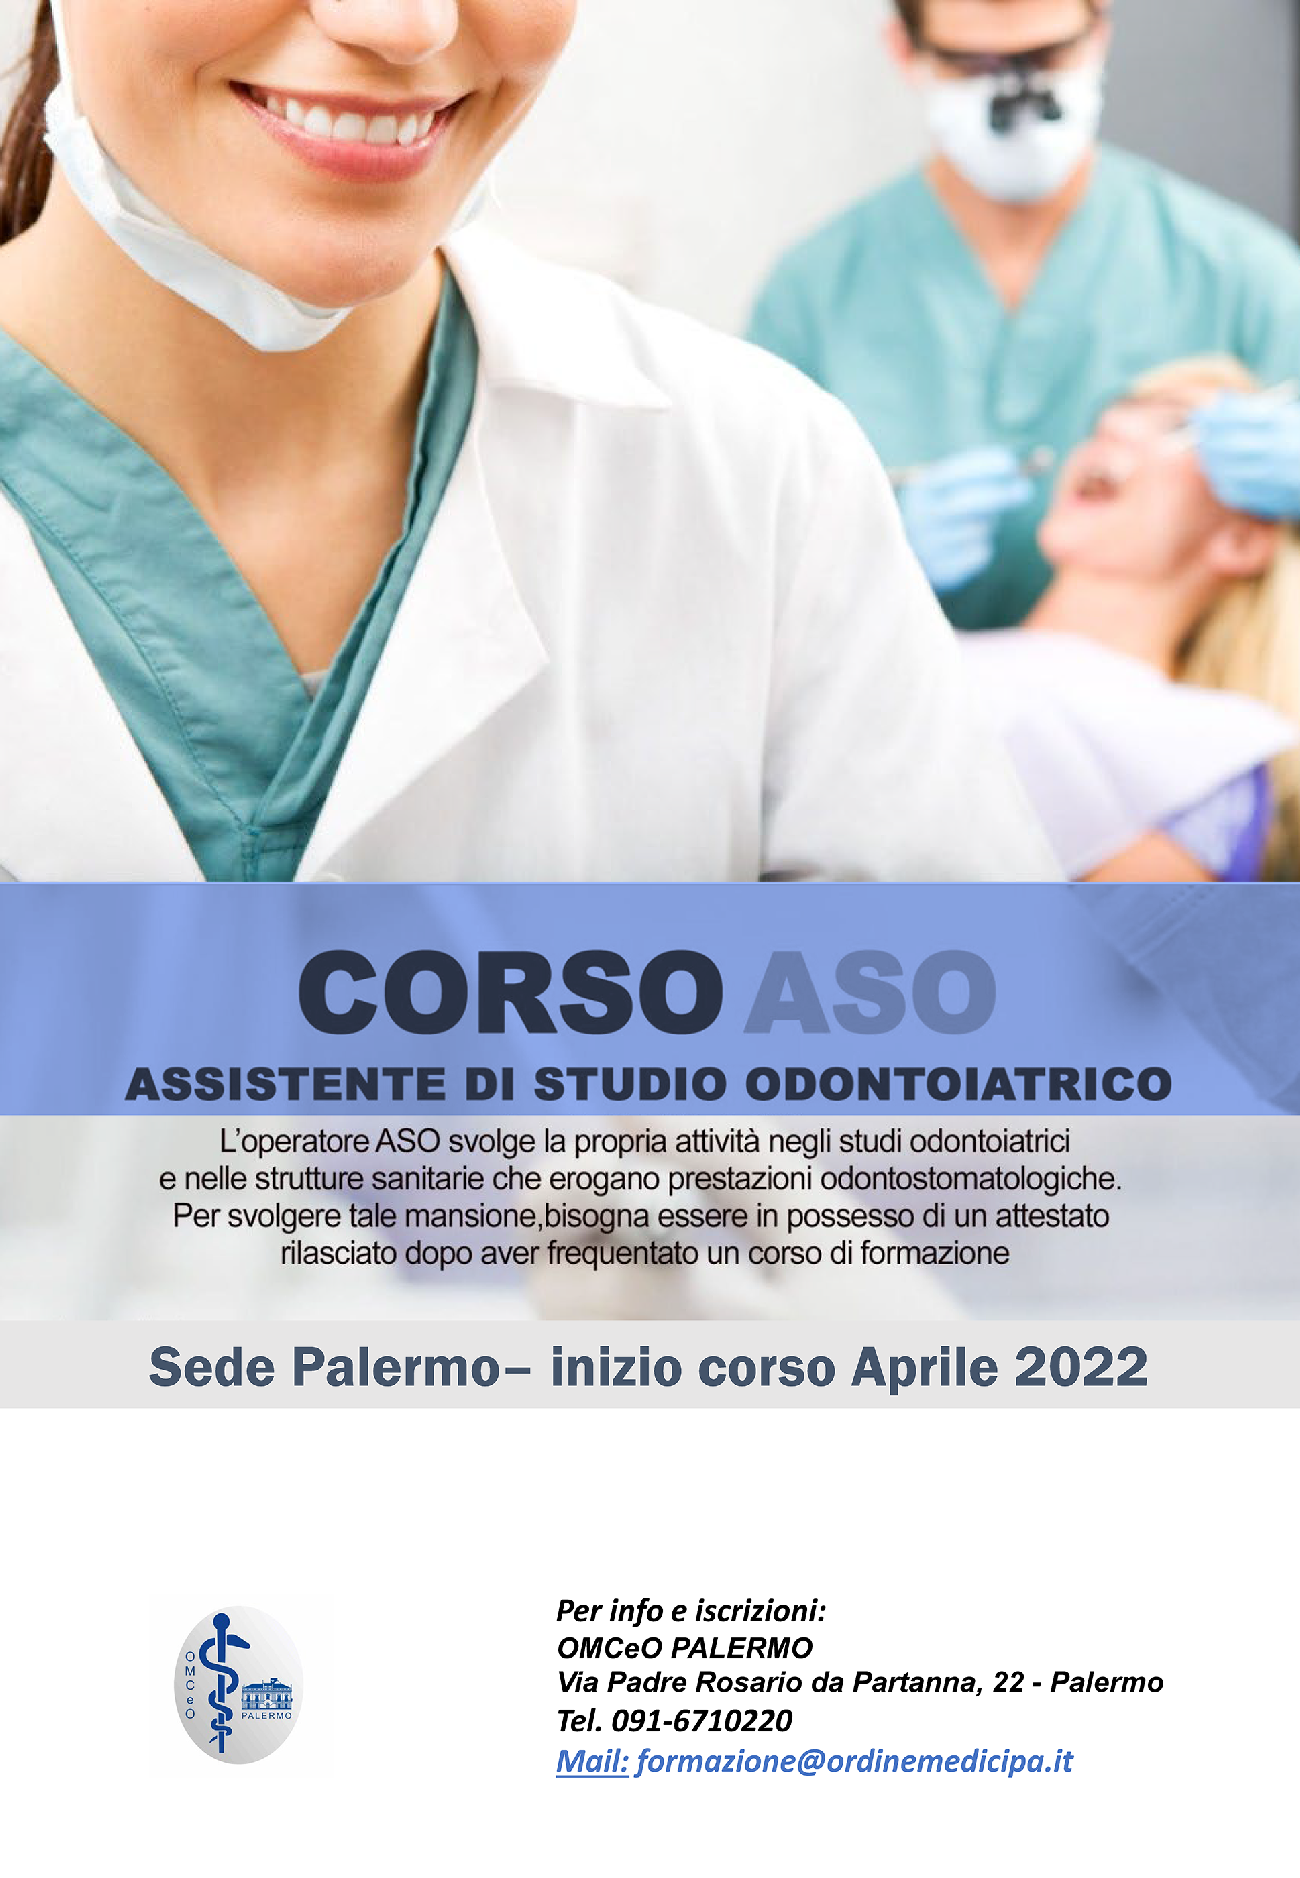 CORSO ASO Assistente di Studio Odontoiatrico 